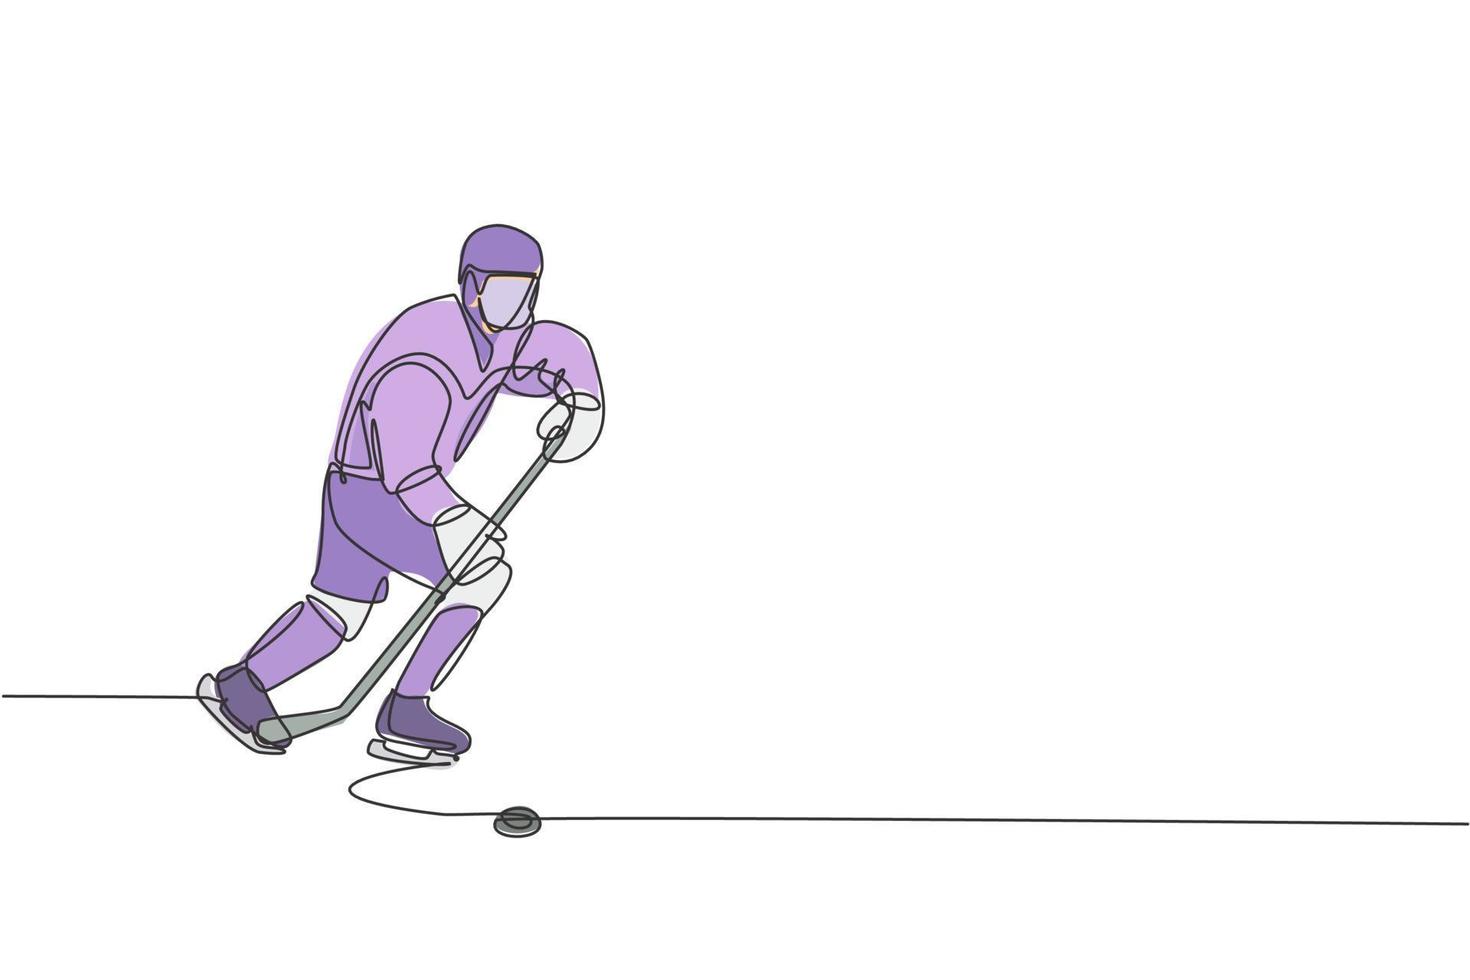 un dessin en ligne continu d'un jeune joueur de hockey sur glace professionnel exerçant et pratiquant sur le stade de la patinoire. concept de sport extrême sain. illustration vectorielle de dessin dynamique à une seule ligne vecteur